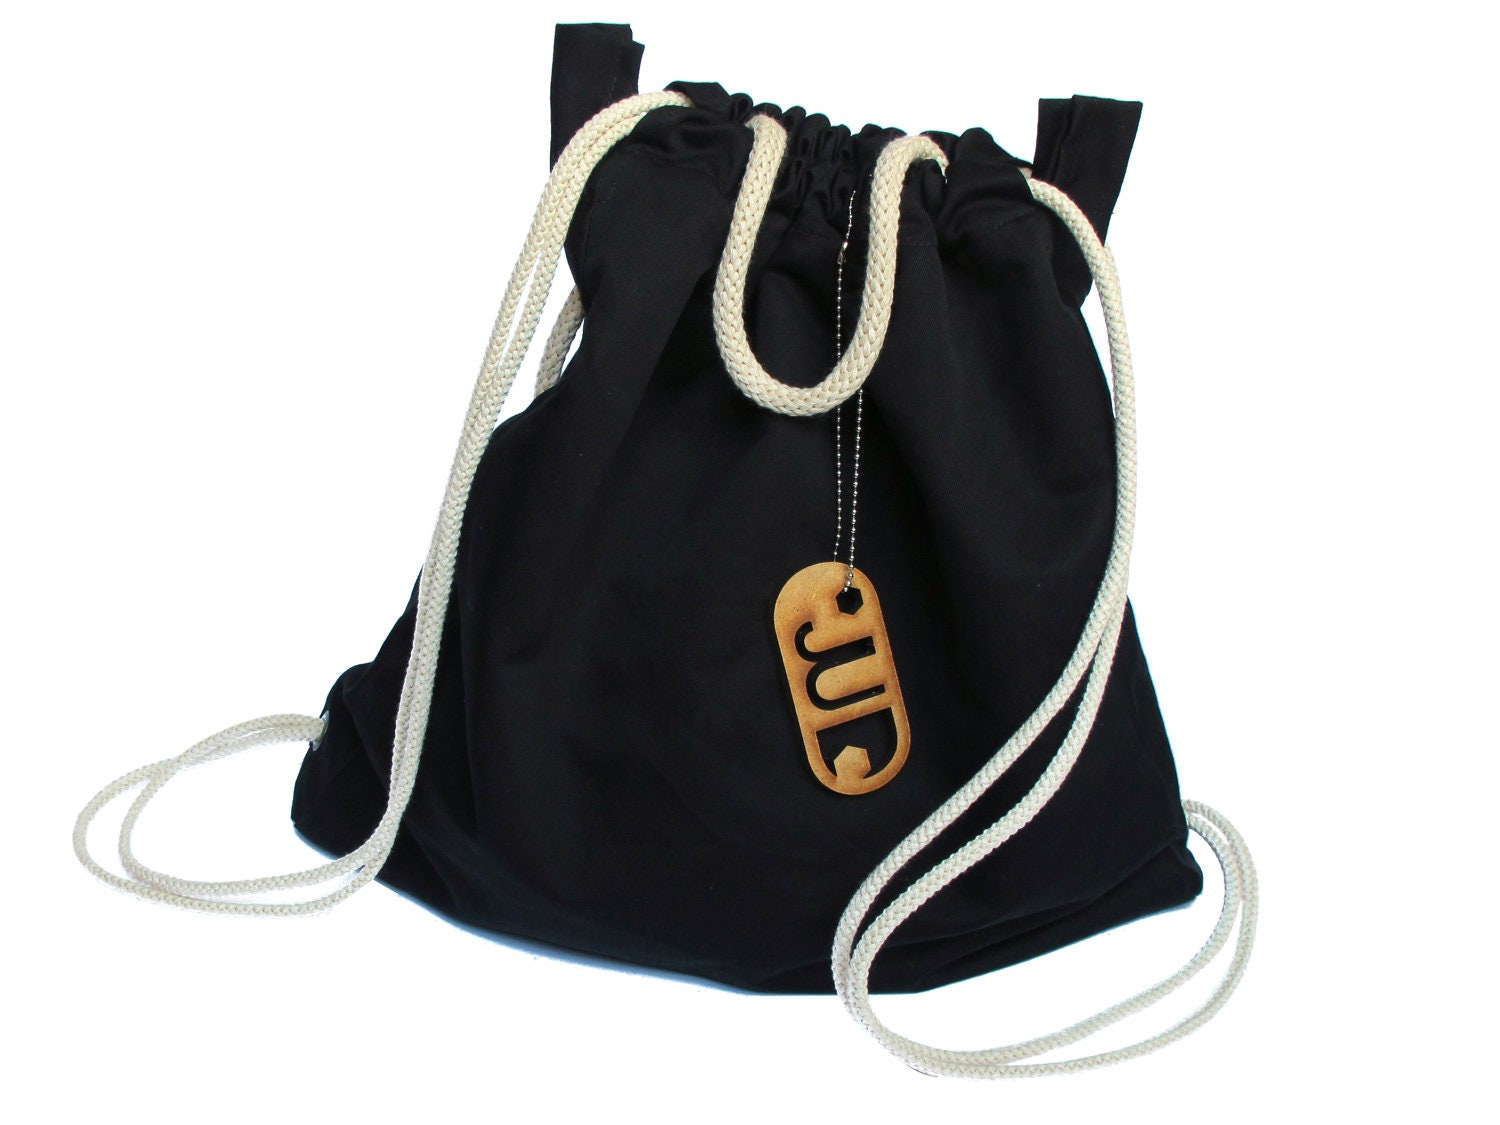 Cotton Backpack, Hipster bag, Gym bag, Tote bag, Leopard color, JUD Hand made. - JUDtlv